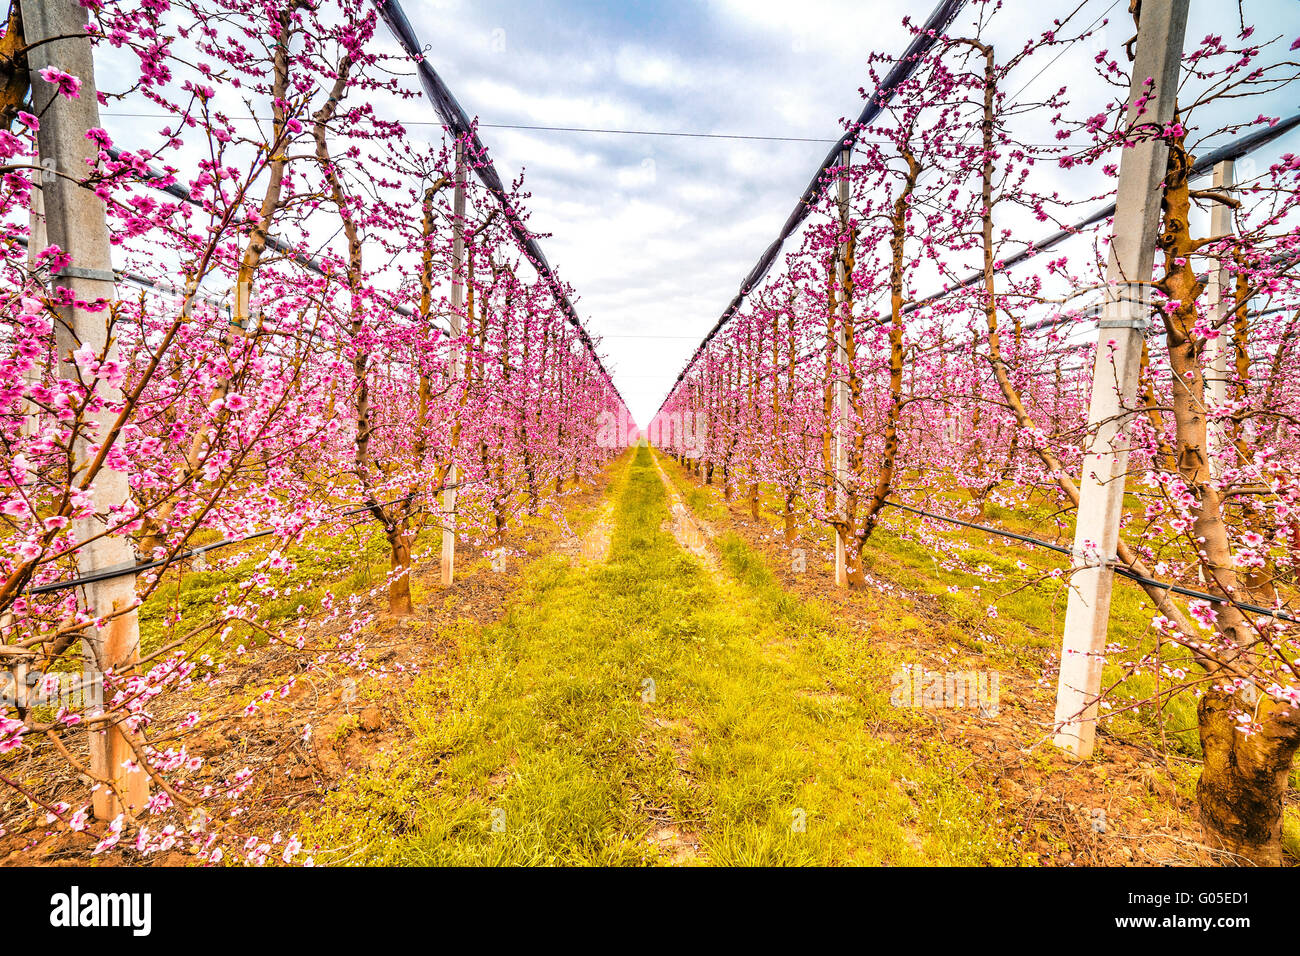 L'agricoltura moderna organizza campi in geometrie regolari di frutteti che preannuncia l'arrivo della primavera con il primo blumi Foto Stock